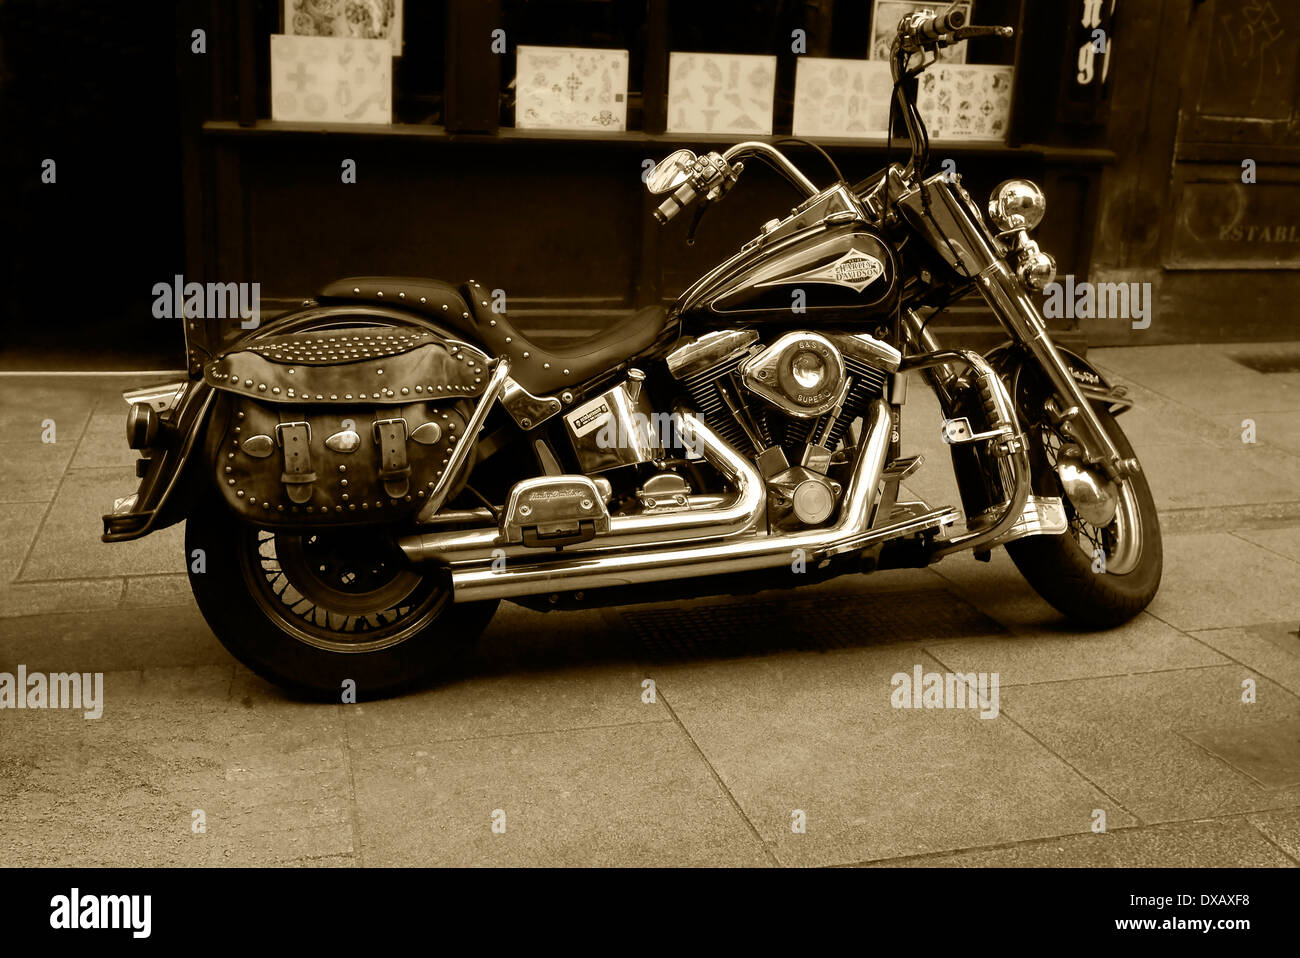 La Harley Davidson Motorcycle ha mostrato come immagine di Seppia Foto Stock